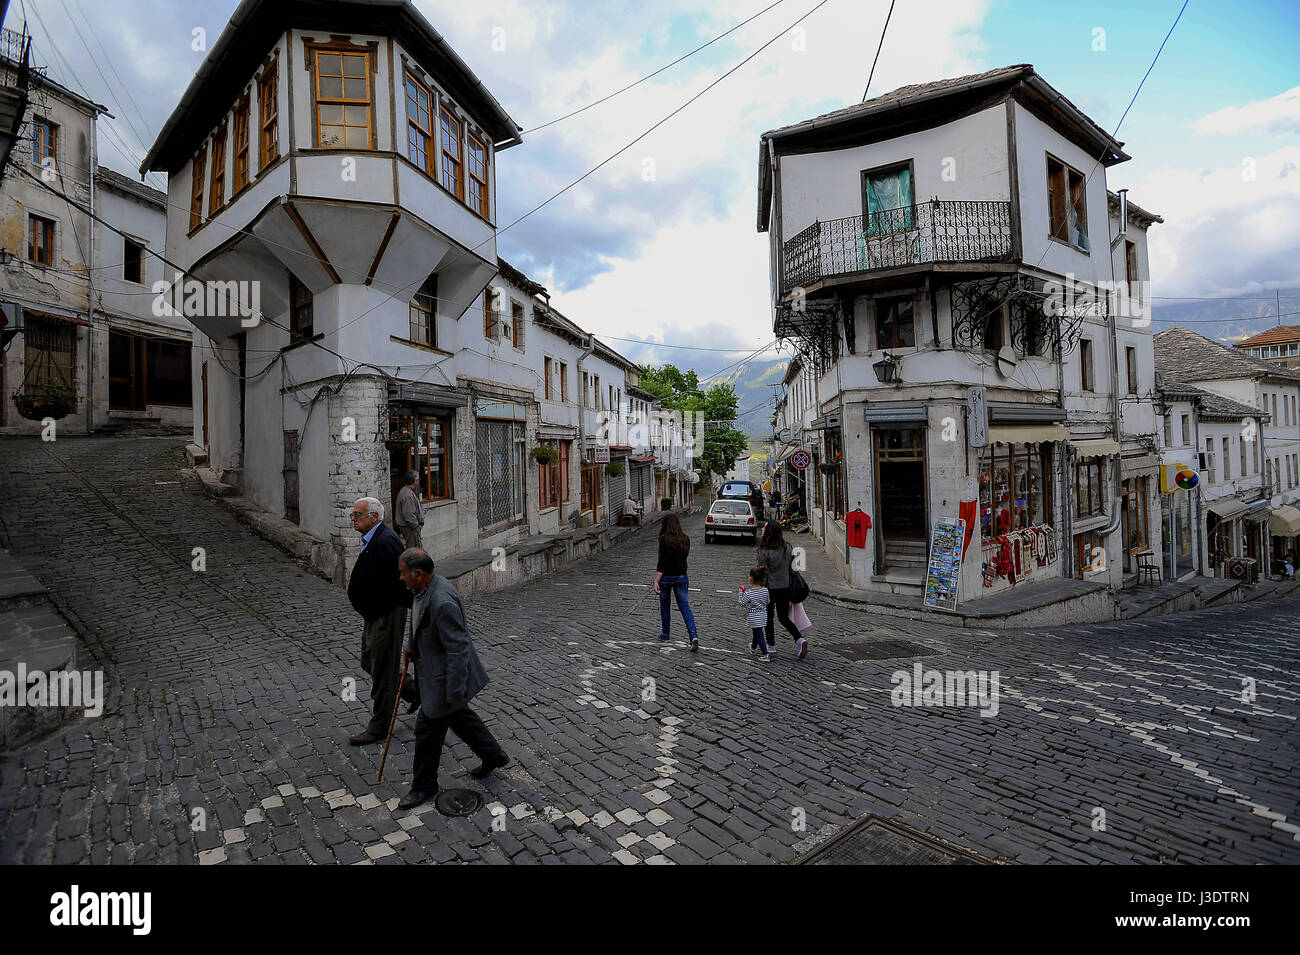 ALBANIA. Gjirokaster. 2011. Street scene in Gjirokaster Stock Photo